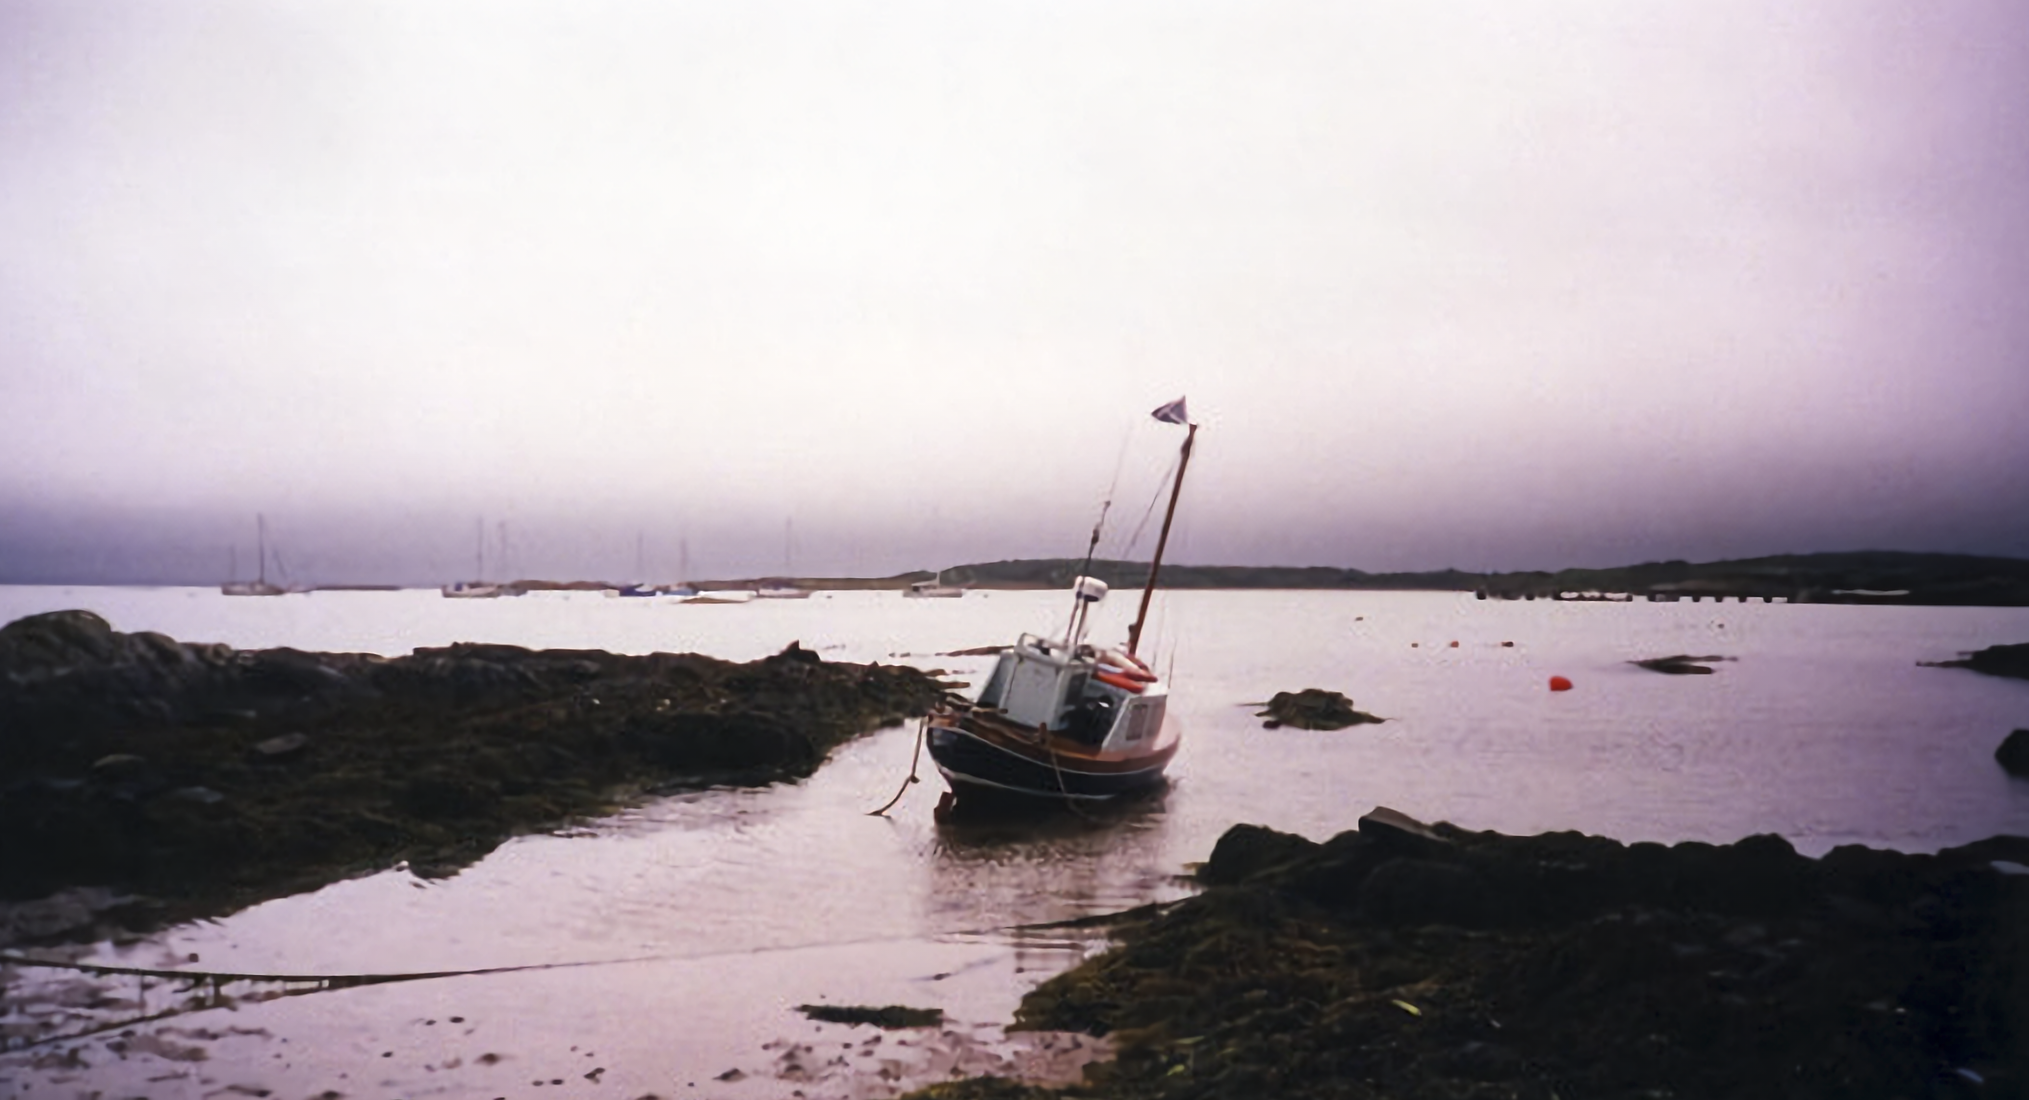  Ardminish Bay, Isle of Gigha © 2000 Dumgoyach